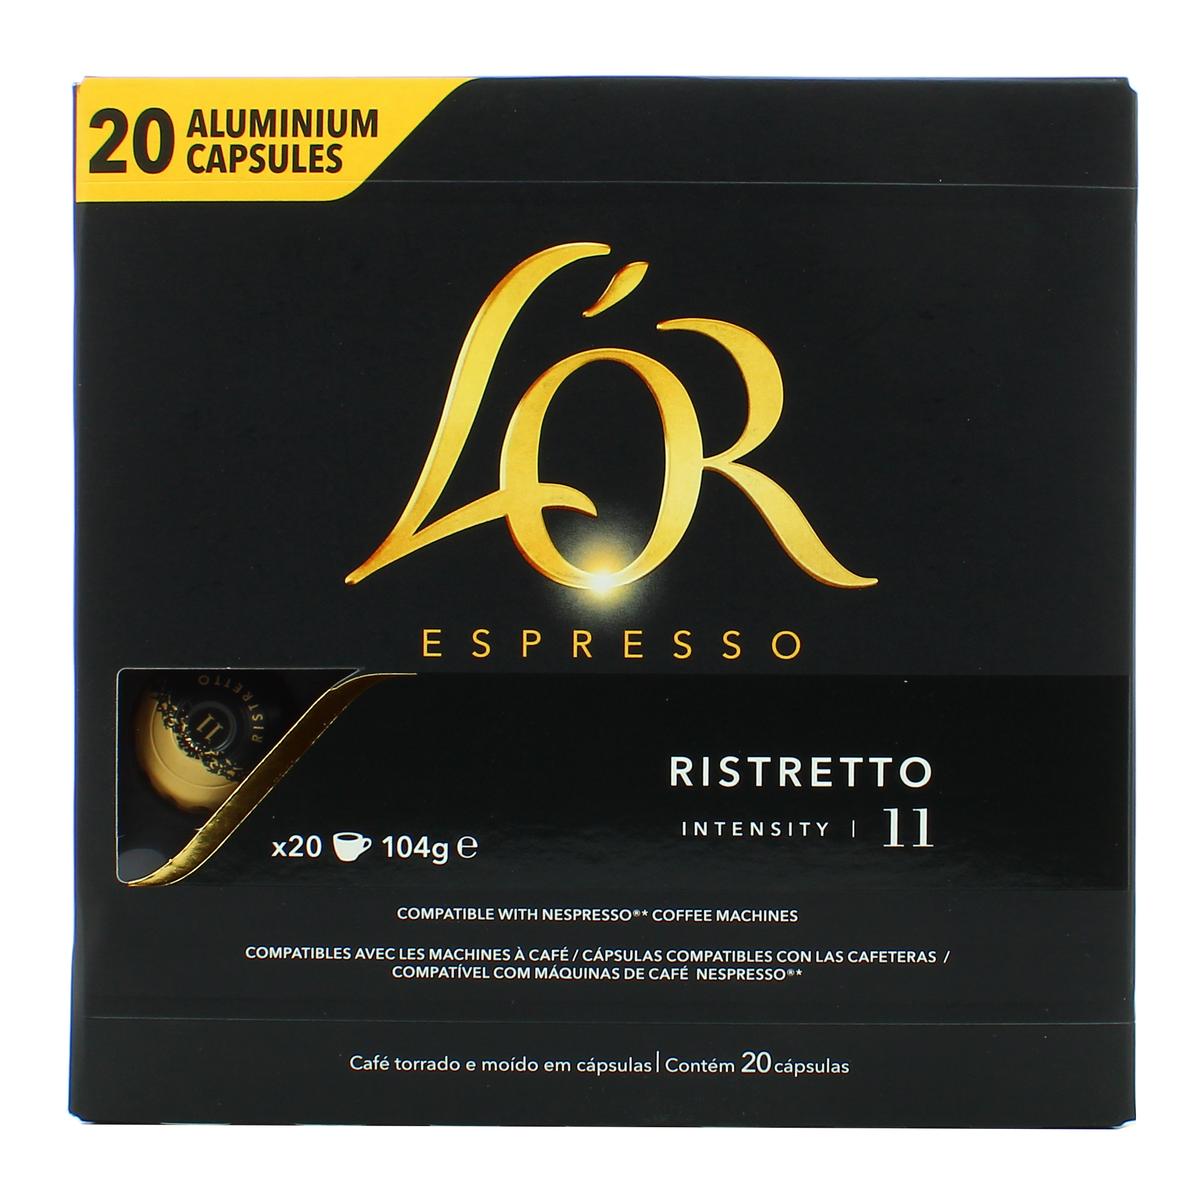 Livraison à domicile L'or Espresso Ristretto intensité 11, 20 capsules